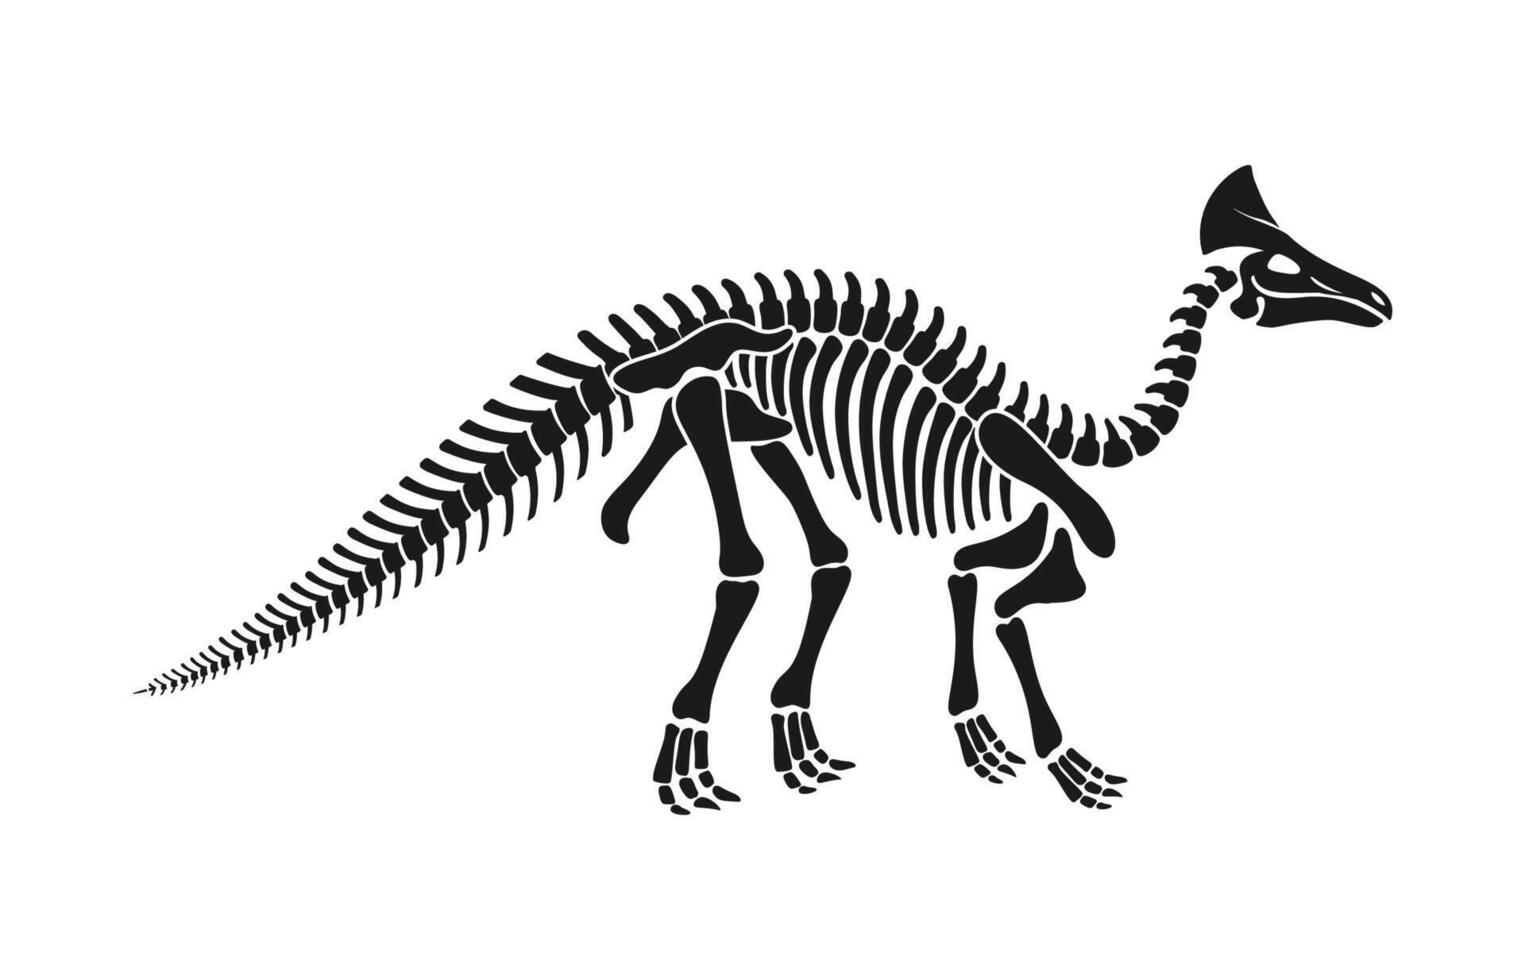 Olorotitan dinosaur skeleton fossil, dino bones vector